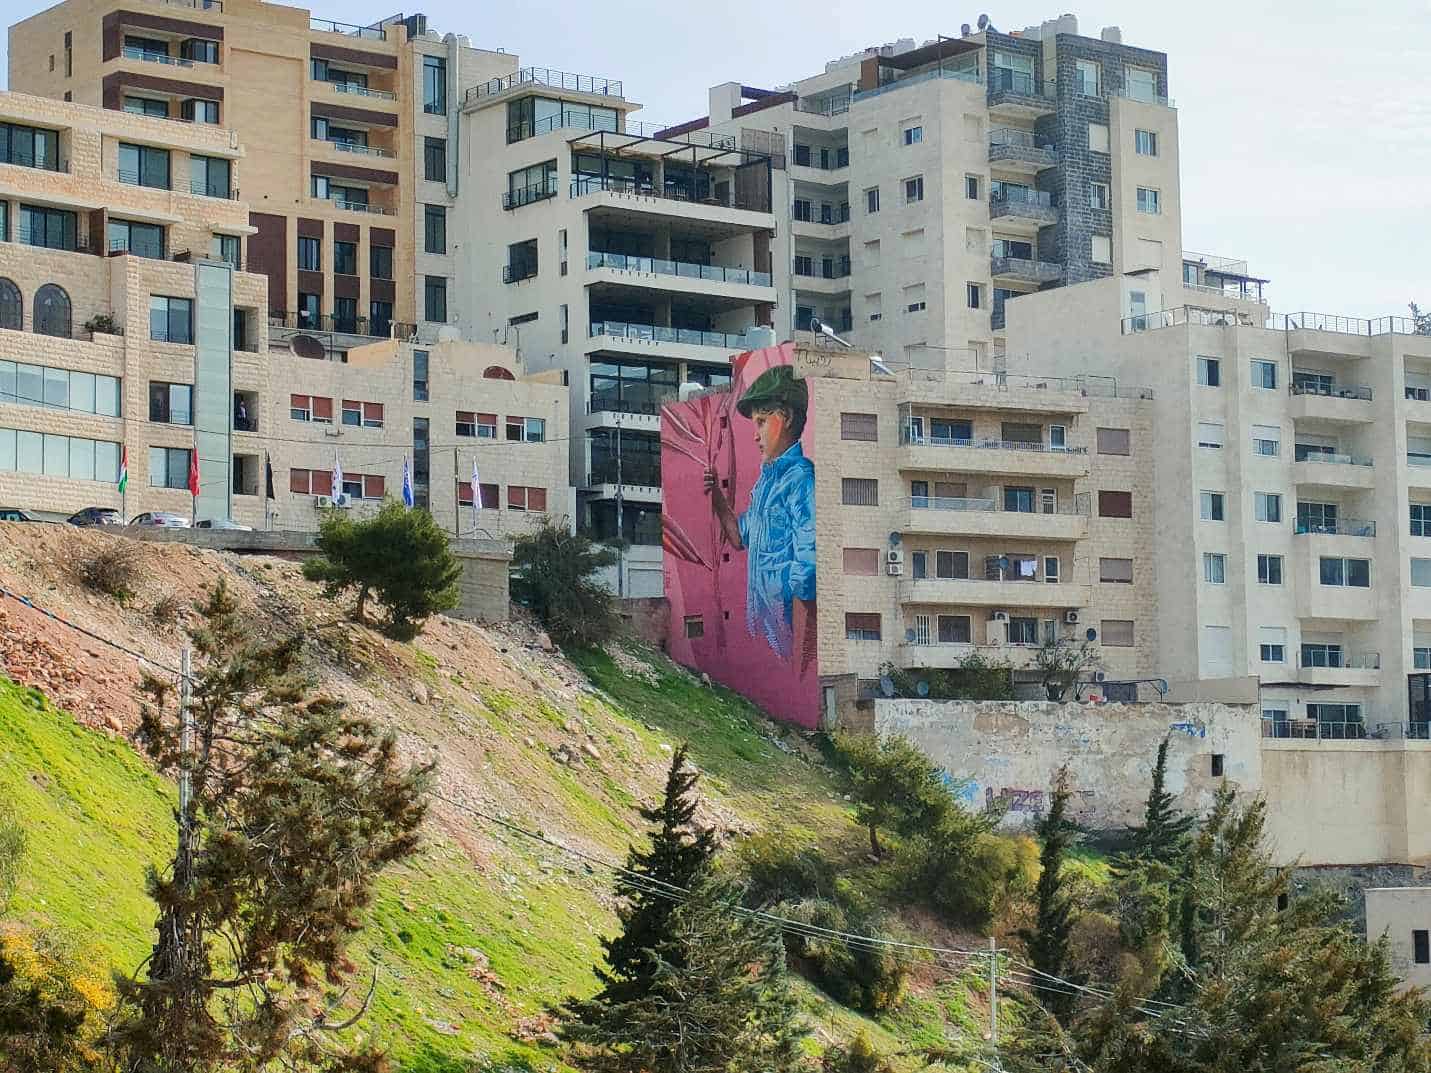 Amman street view with graffiti